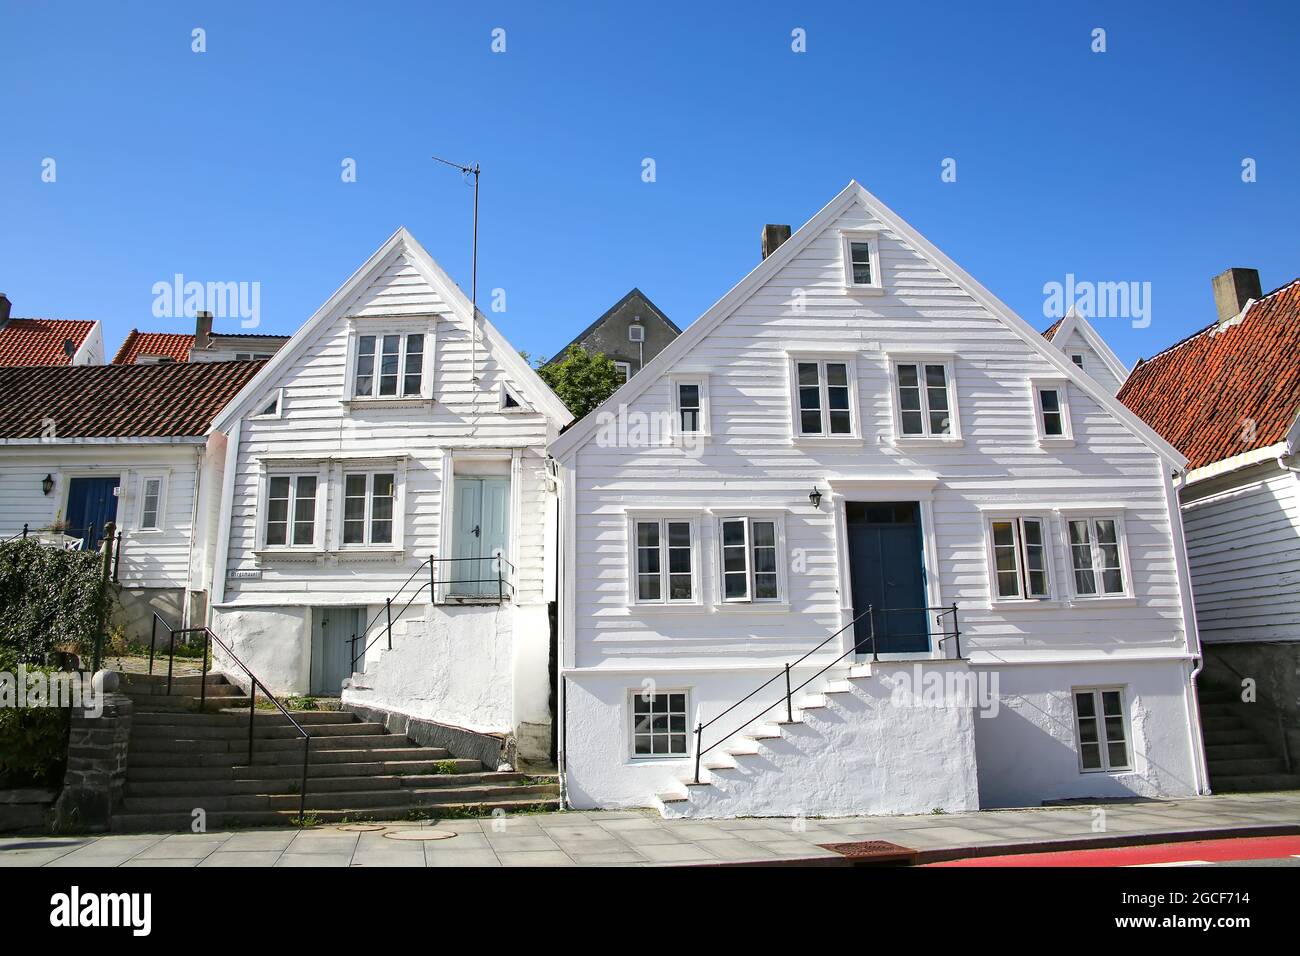 Le tradizionali case in legno sono tutte dipinte di bianco con tetti rossi. Situato a Gamle Stavanger, un'area storica della città di Stavanger, Norvegia. Foto Stock